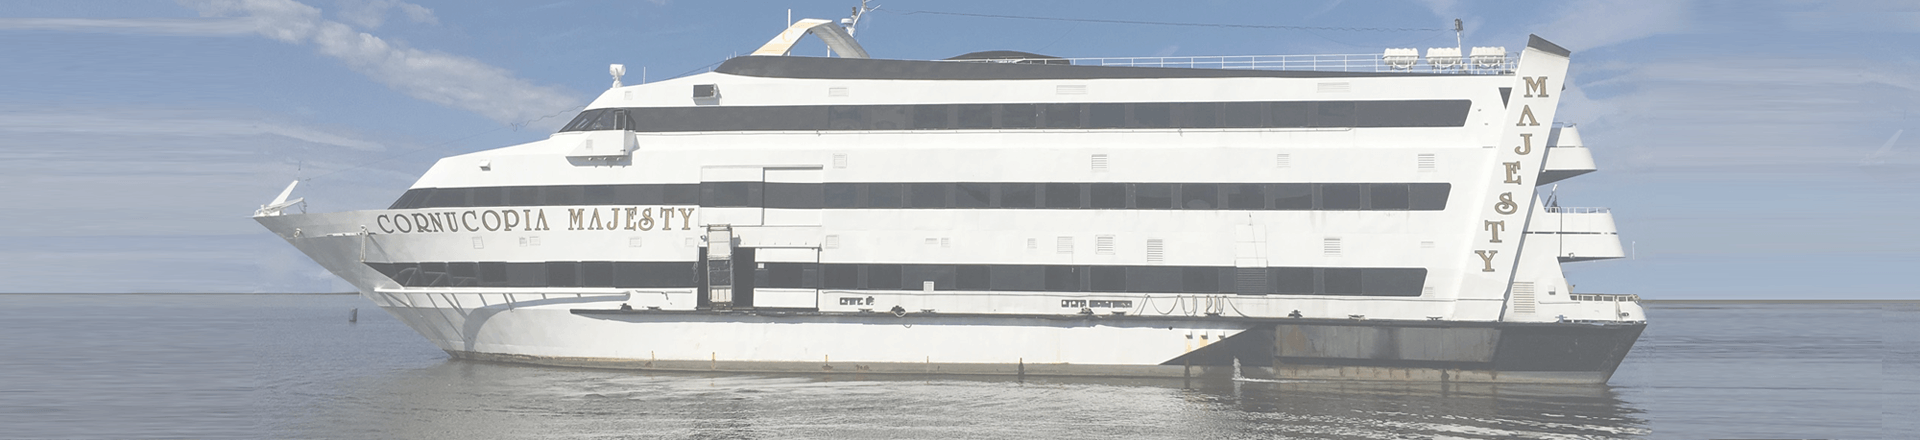 pier 40 cornucopia majesty mega yacht